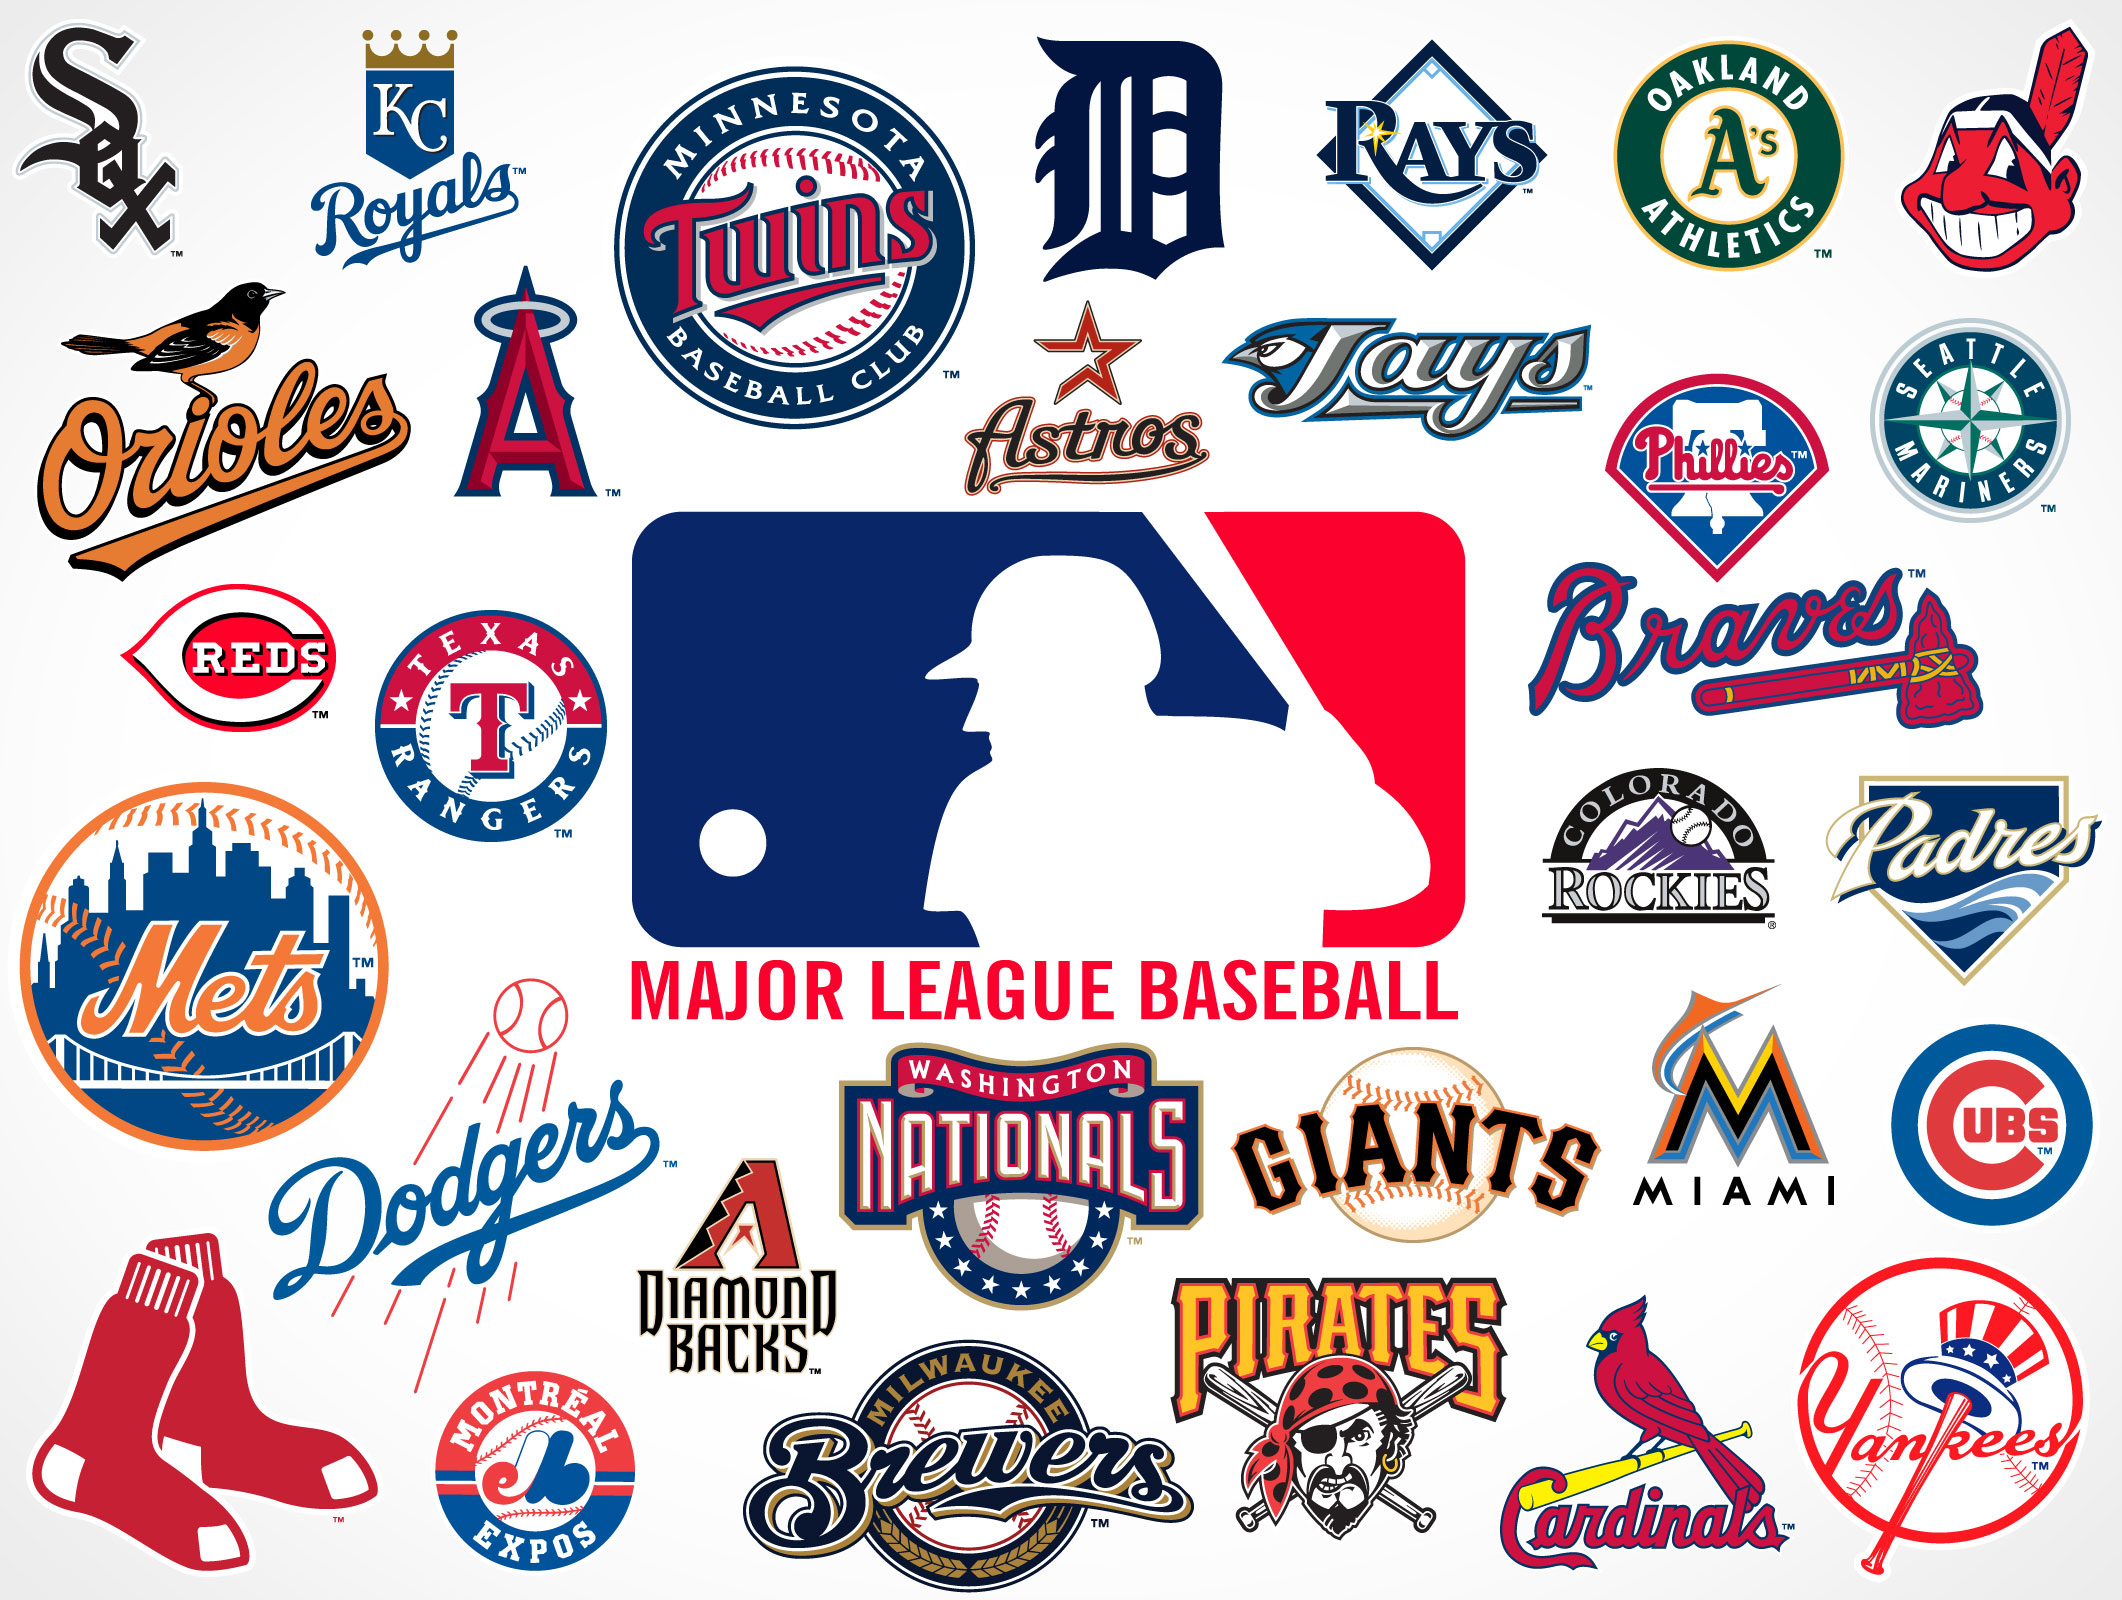 Major League Baseball Teams Logos